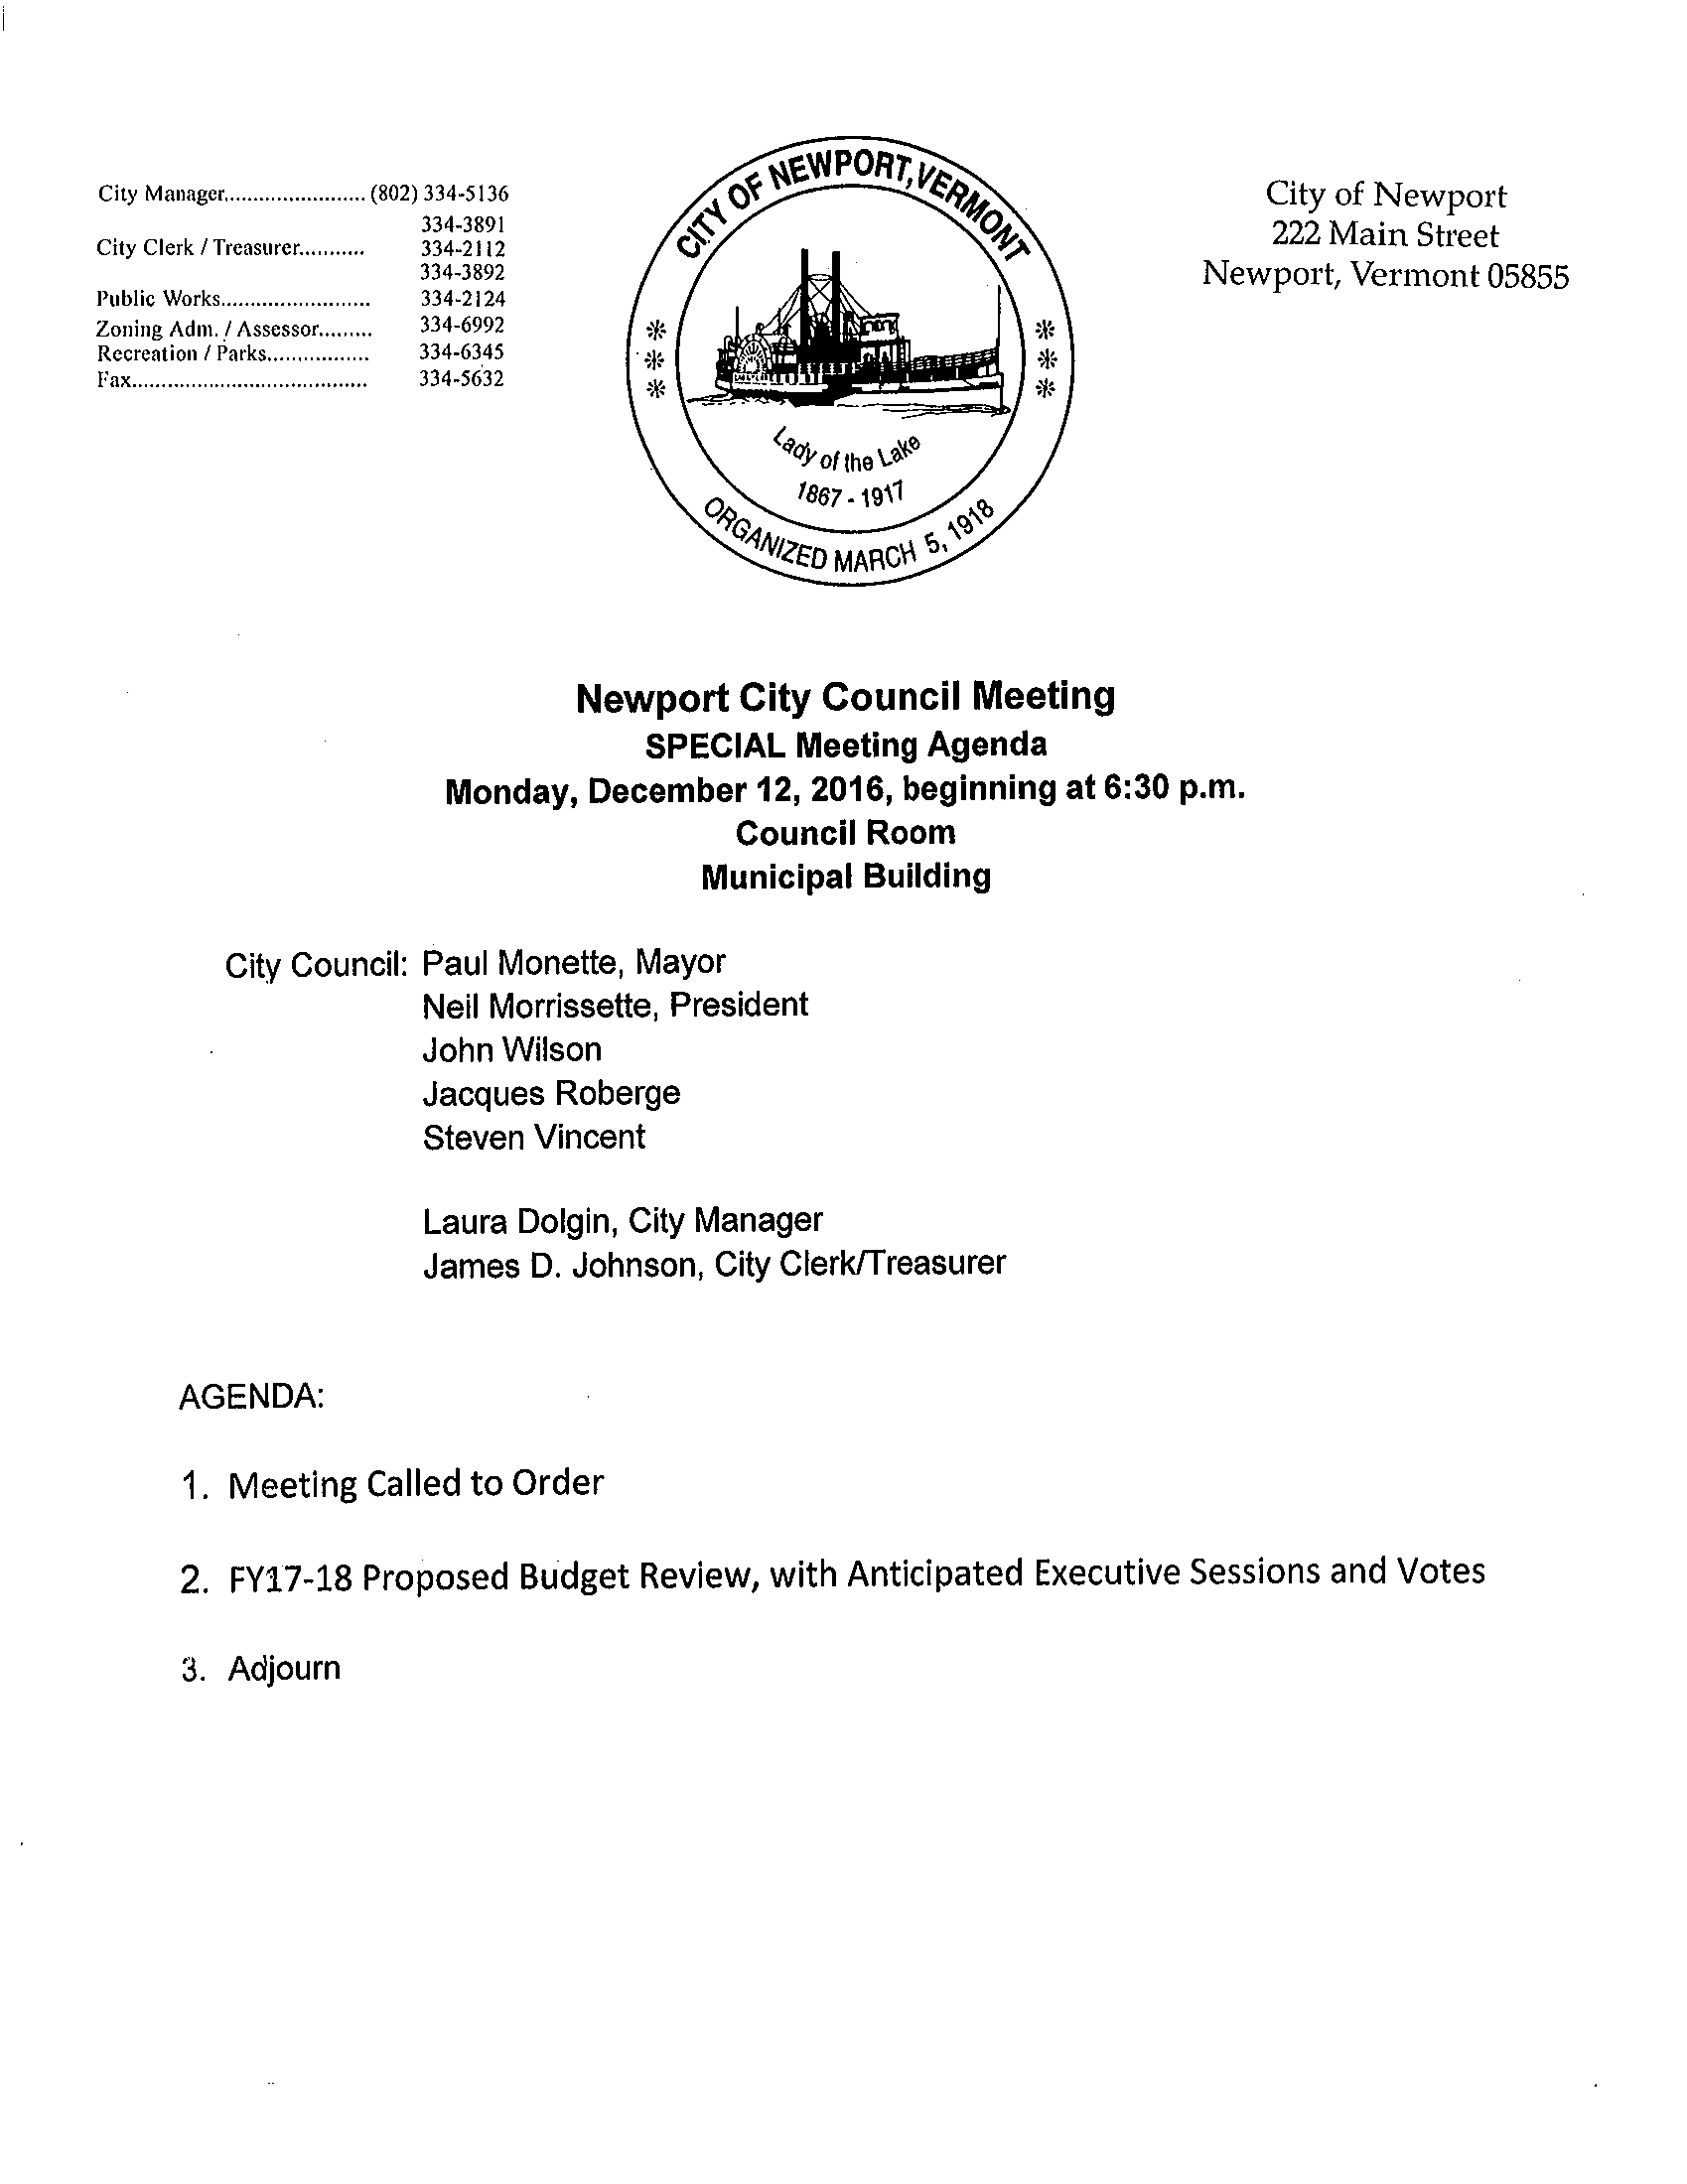 Maak plaats isolatie Arbeid Newport, Vermont | 12-12-2016 City Council Agenda